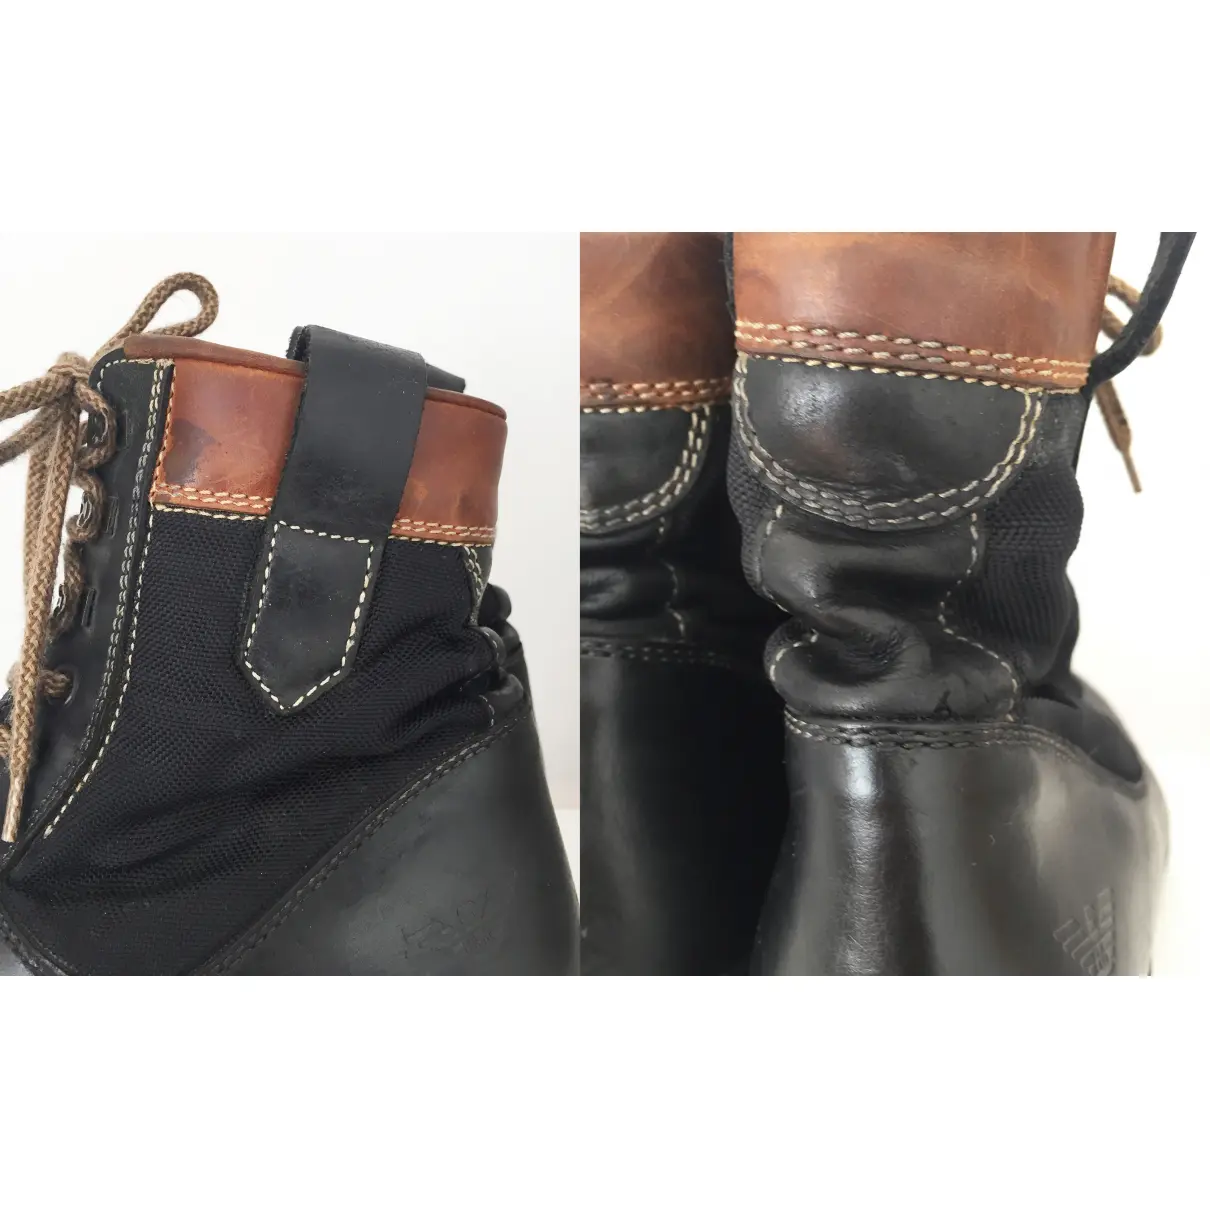 Leather lace up boots Giorgio Armani